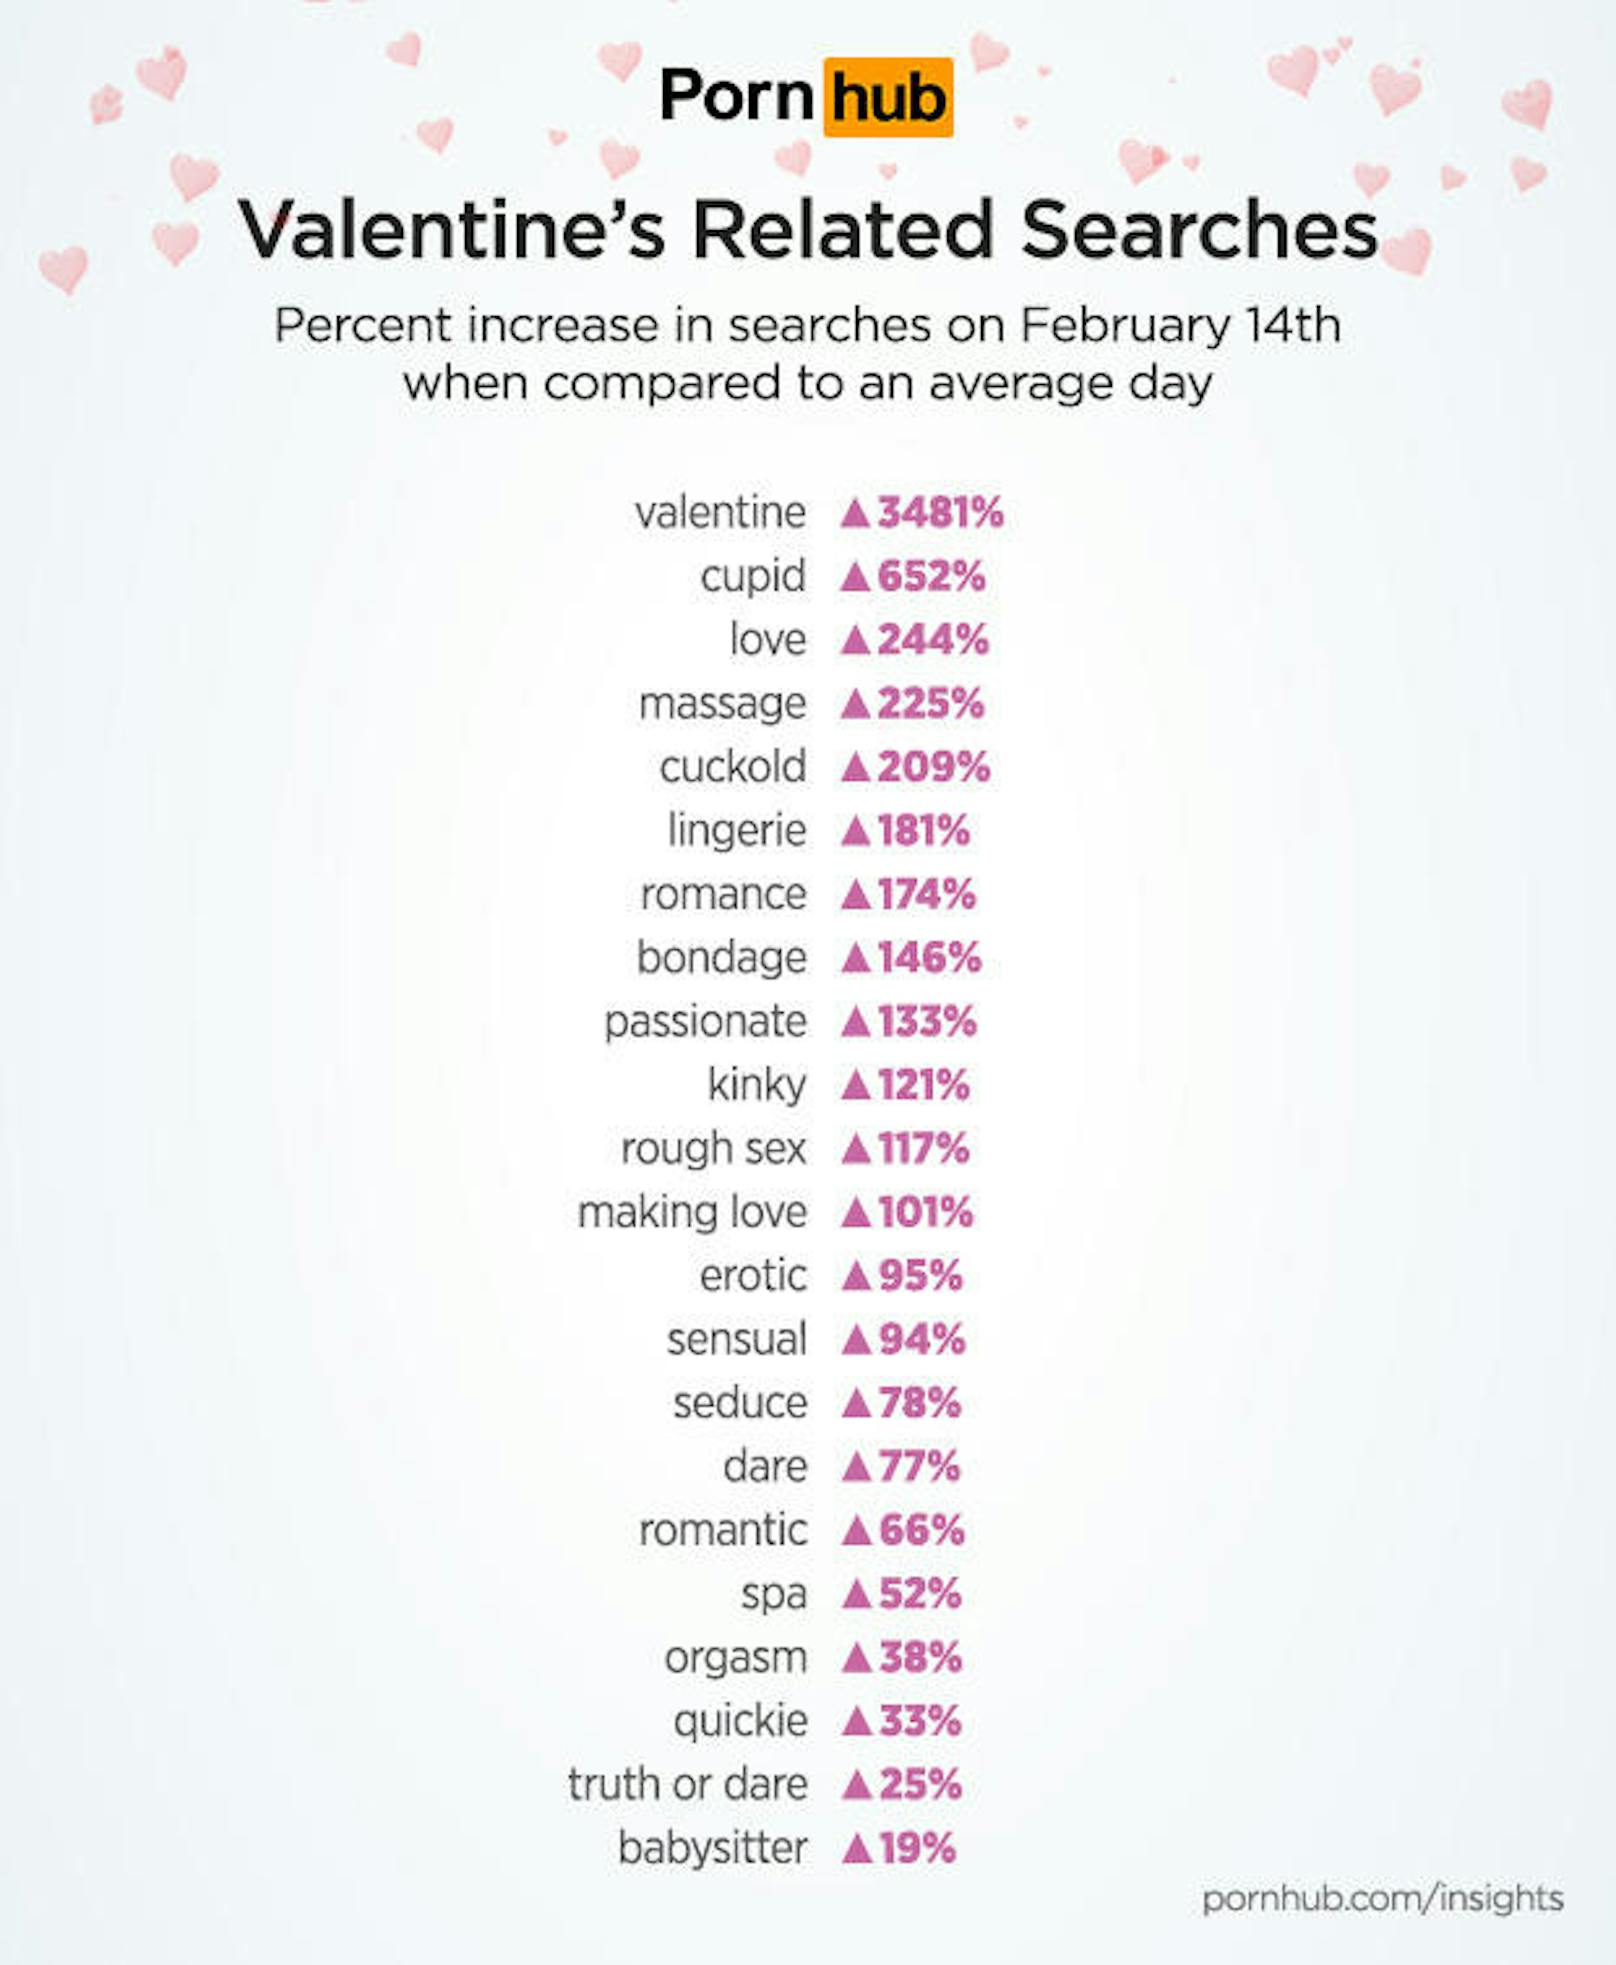 Bei den Suchbegriffen, die in inhaltlichem Zusammenhang mit dem Valentinstag stehen, steigt wenig überraschend die Suche nach "Valentin". Es folgen äußerst romantisch "Amor" und "Liebe". In weiterer Folge "Massage" und "Betrogener"